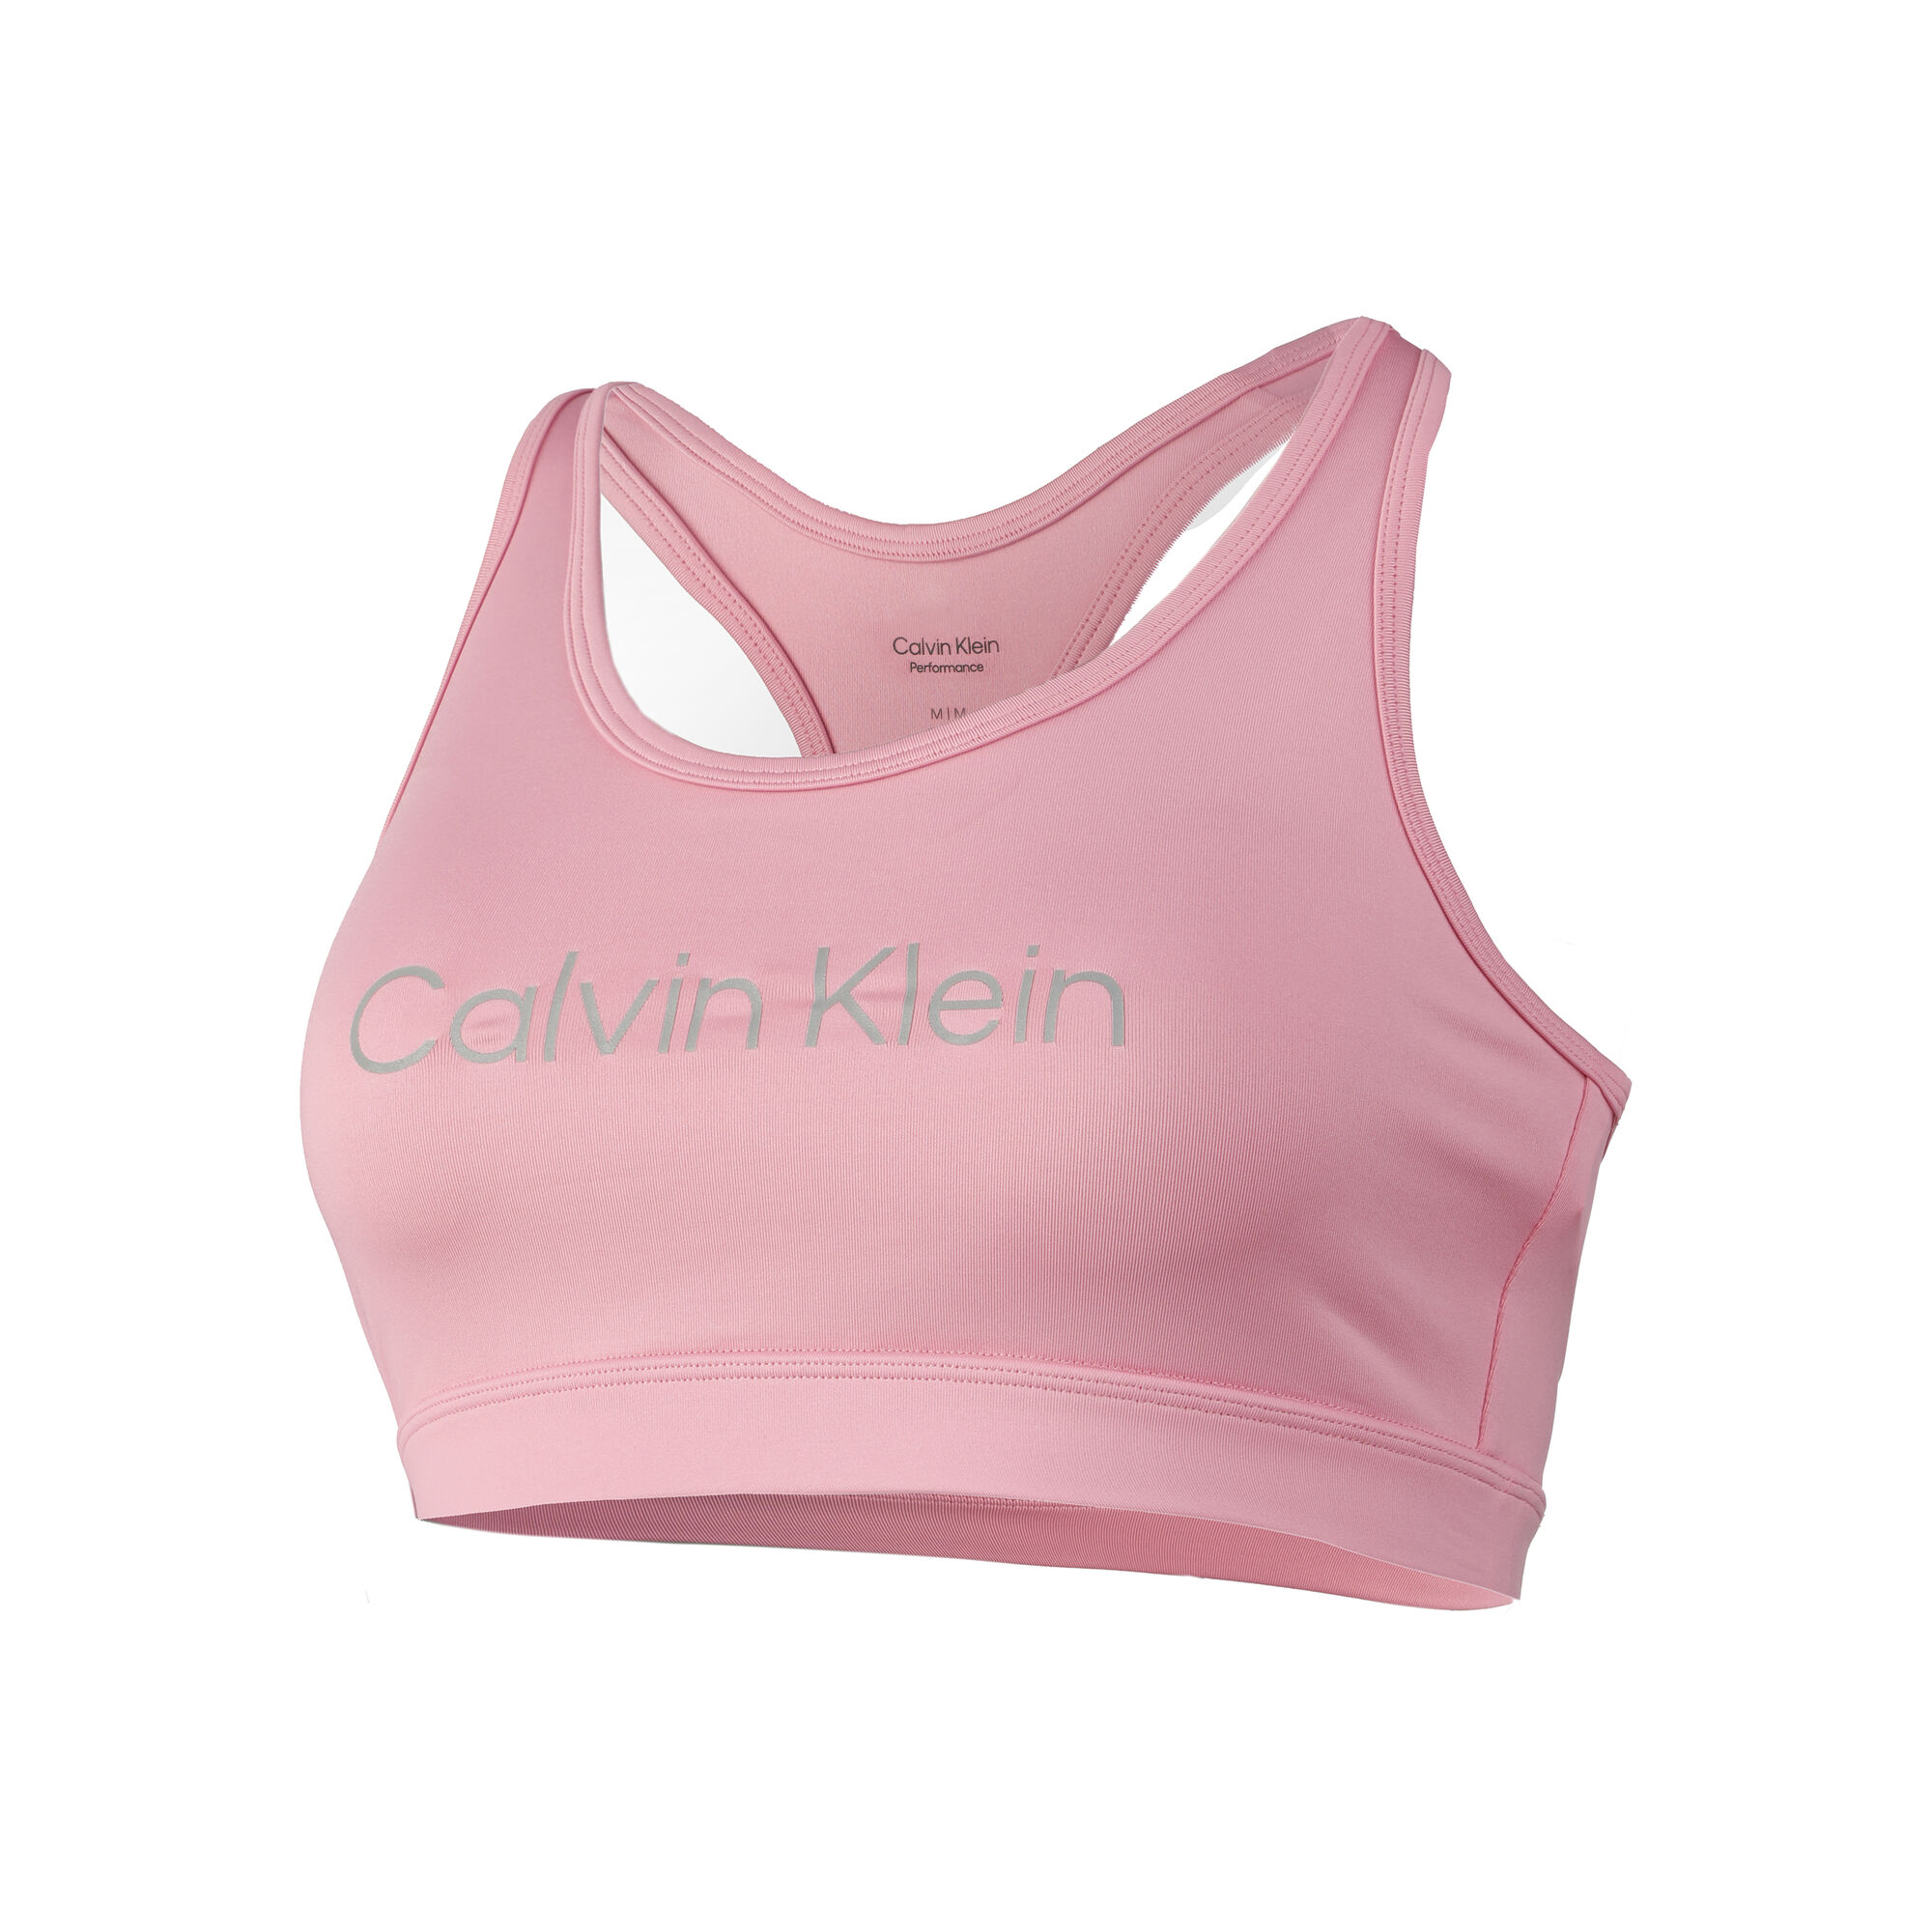 Buy Calvin Klein Medium Support Sports Bras Women Pink online